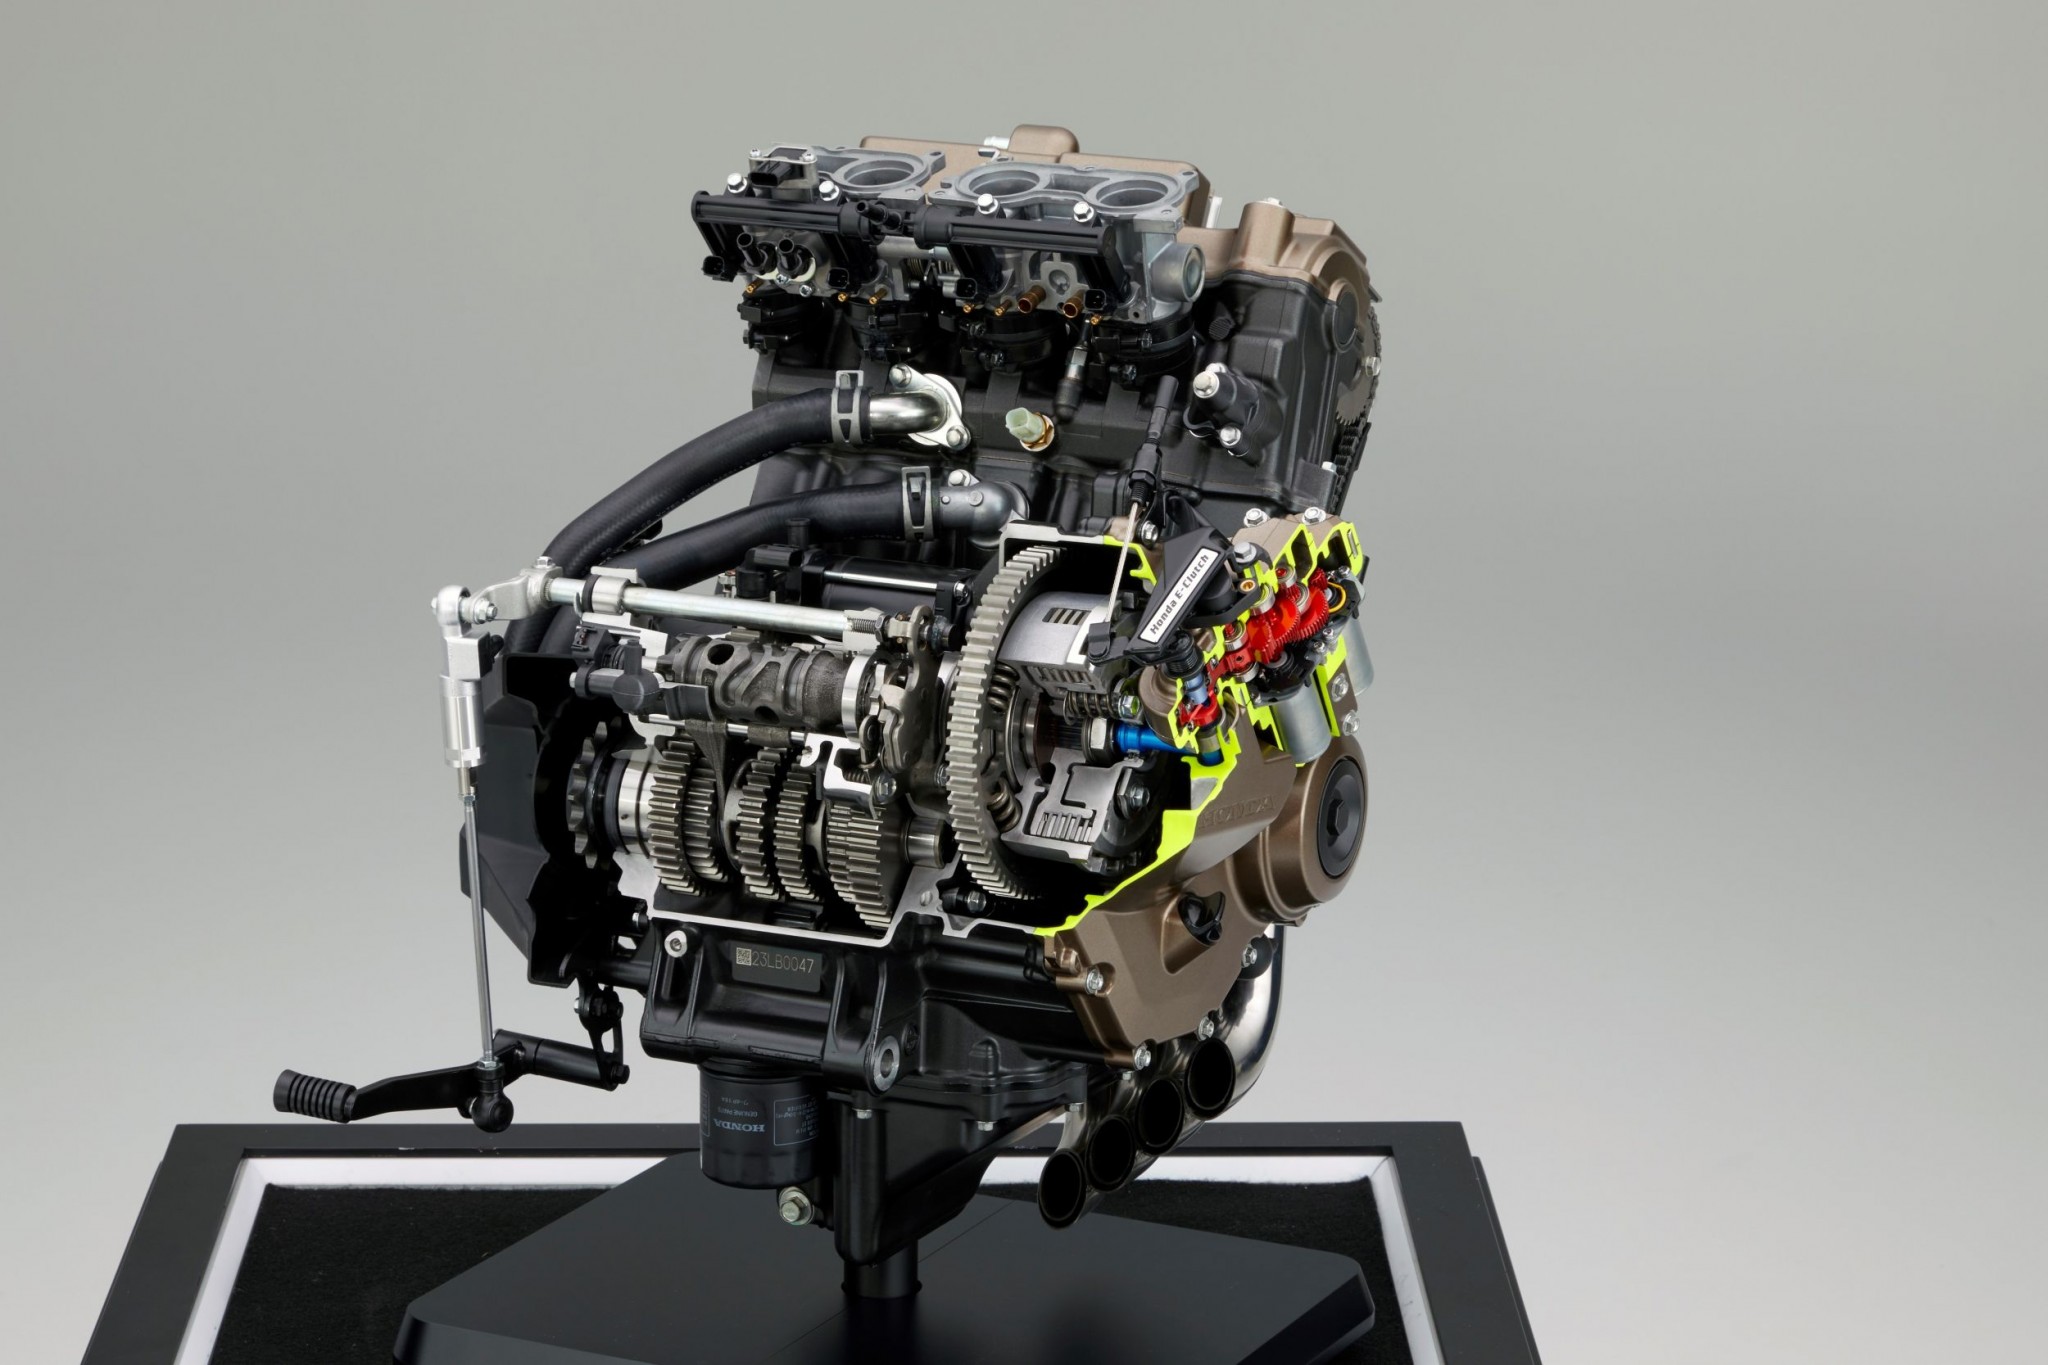 Test elektronske kvačila Honda CBR650R 2024

Honda je nedavno predstavila novu verziju svog popularnog motocikla CBR650R, koji sada dolazi sa elektronskim kvačilom, poznatim kao E-Clutch. Ova inovacija obećava da će olakšati vožnju omogućavajući vozačima da menjaju brzine bez potrebe za ručnim korišćenjem kvačila. 

Elektronsko kvačilo funkcioniše tako što automatski reguliše pritisak potreban za aktiviranje kvačila, što omogućava glatke promene brzina bez prekida u isporuci snage. Ovo je posebno korisno pri vožnji u gradu, gde česte promene brzina mogu biti naporne i otežavaju koncentraciju na saobraćaj.

Testiranje ovog sistema pokazalo je da E-Clutch ne samo da olakšava upravljanje motociklom, već i povećava sigurnost vožnje. Vozači mogu da se fokusiraju na okolinu bez brige o mehaničkim aspektima vožnje, što je posebno važno za manje iskusne vozače.

Honda CBR650R sa elektronskim kvačilom biće dostupna na tržištu od 2024. godine i očekuje se da će privući veliki broj kupaca, kako iskusnih tako i onih koji tek ulaze u svet motociklizma. Ovaj model predstavlja značajan korak napred u tehnologiji motocikala i potencijalno postavlja nove standarde u industriji. - Слика 52